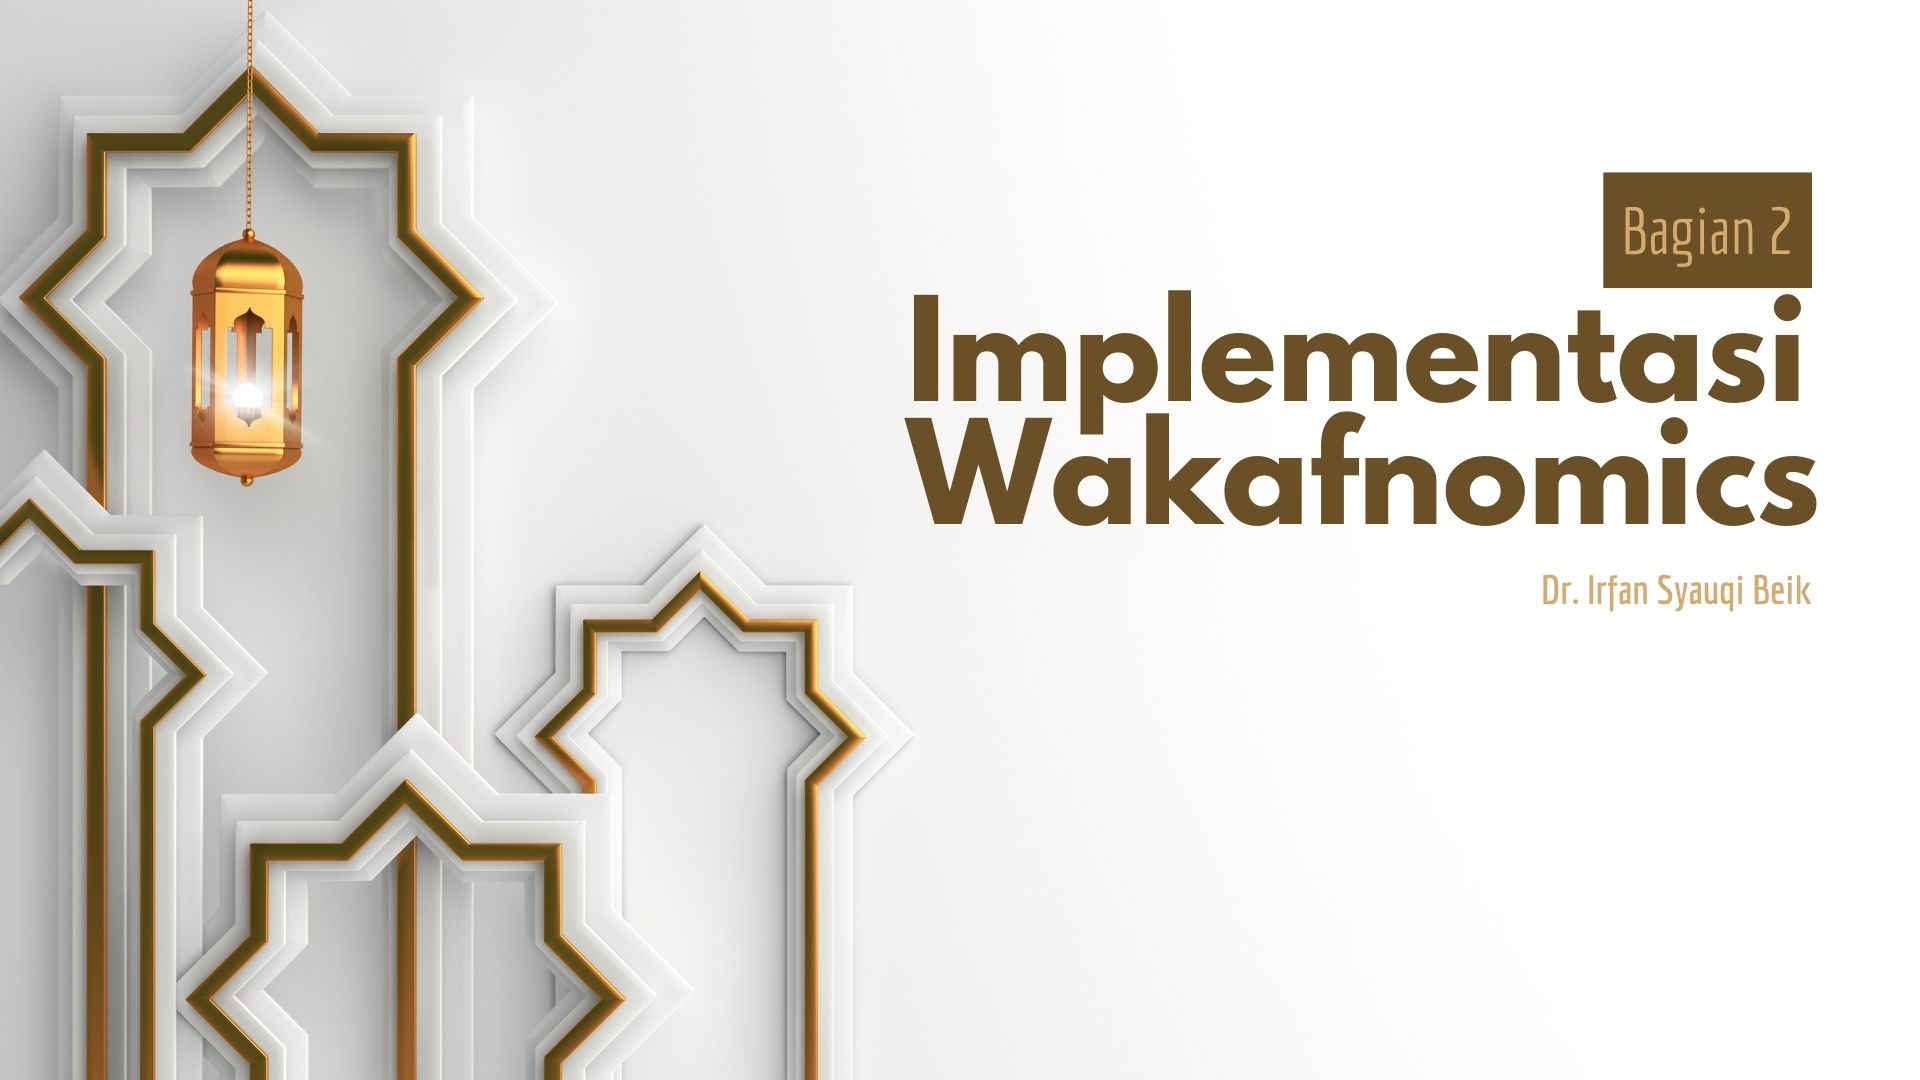 Implementasi Wakafnomics (Bagian 2)  - Implementasi Wakafnomik Bagian 2 - Implementasi Wakafnomics (Bagian 2)